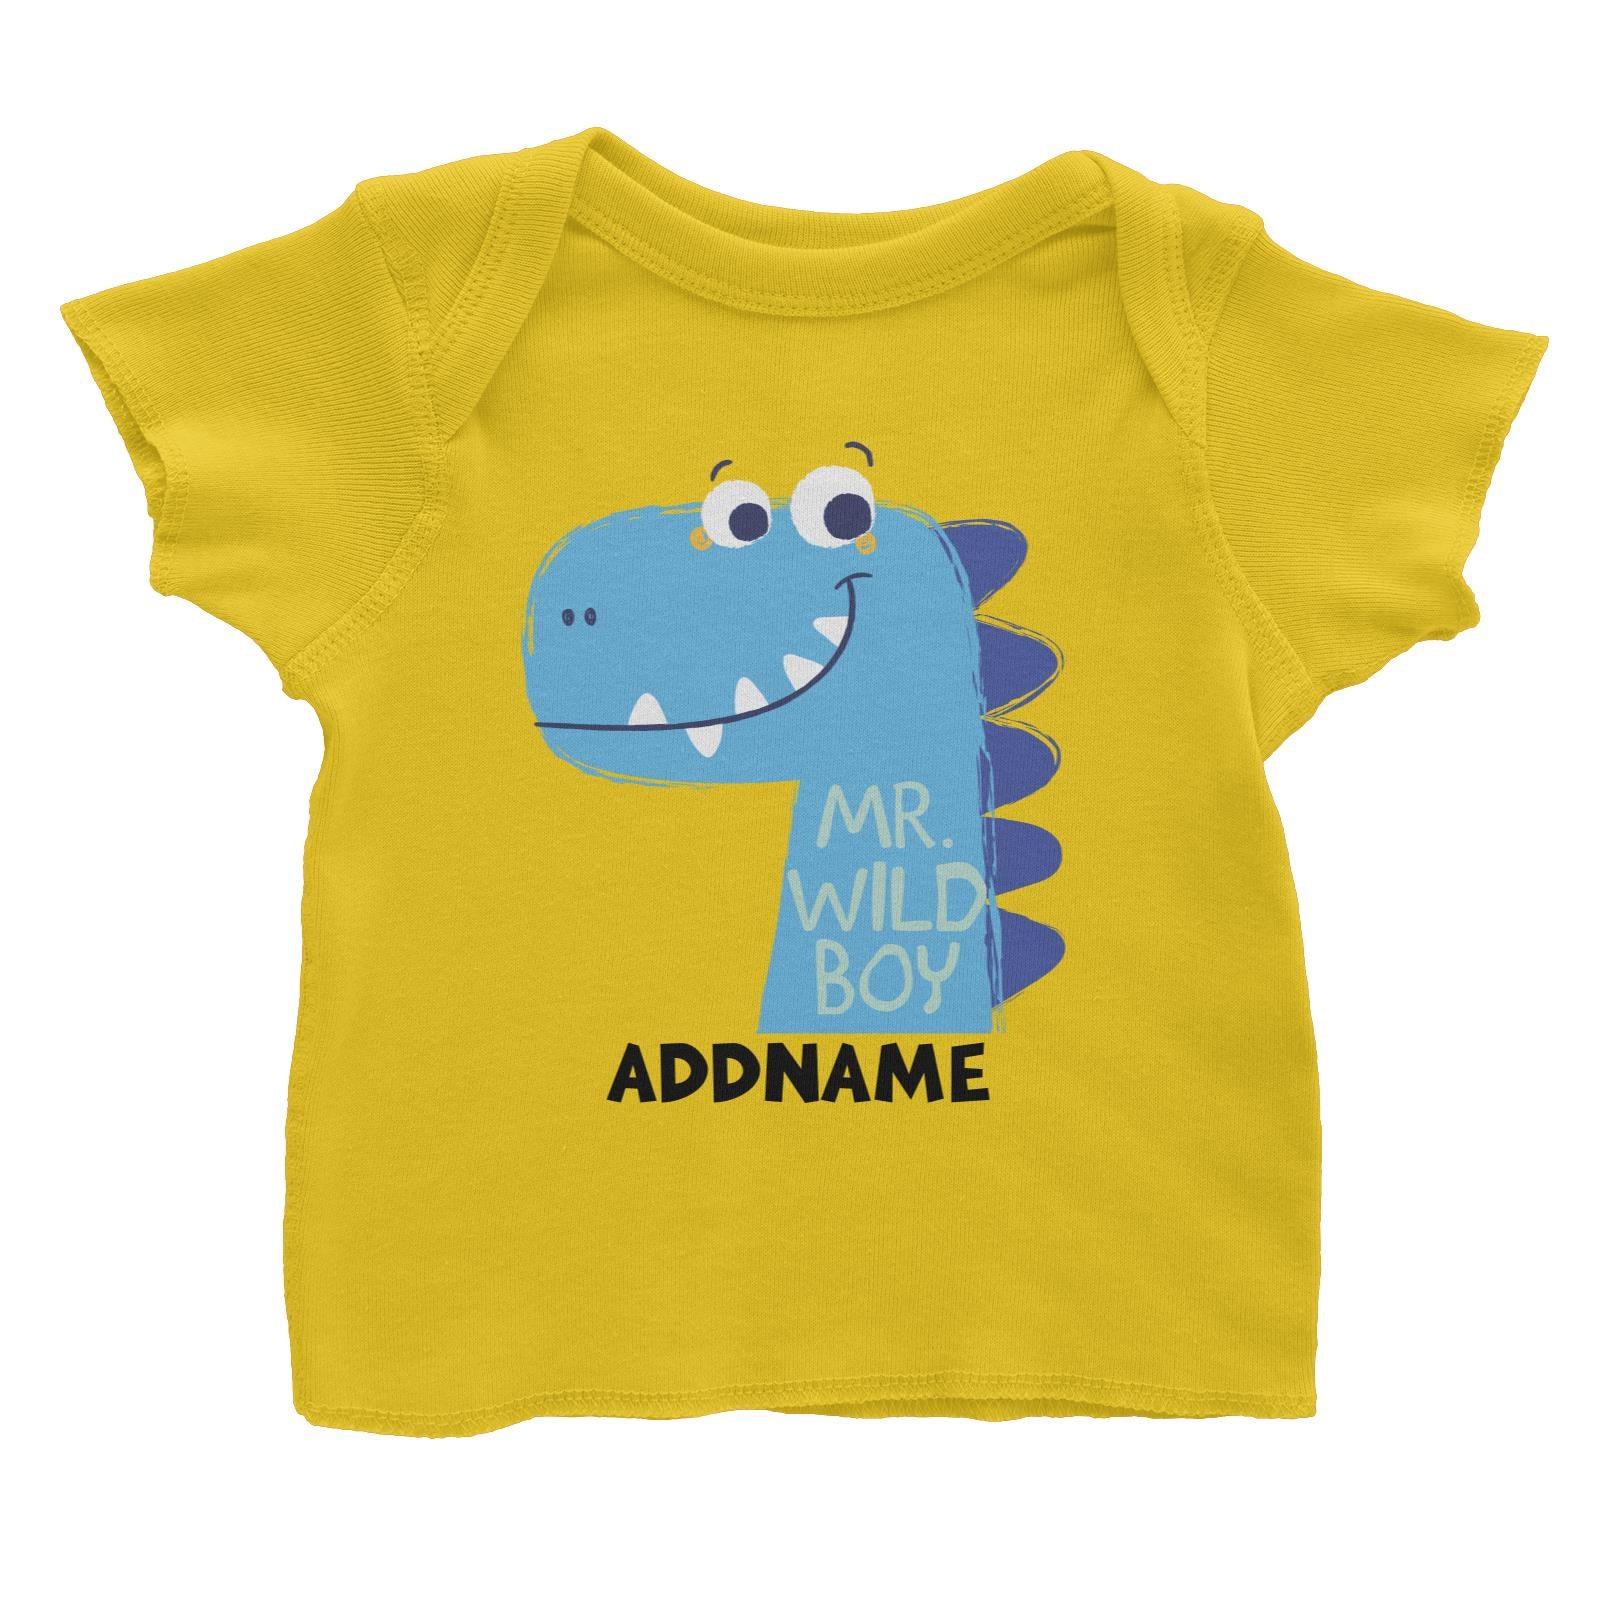 Mr Wild Boy Dinosaur Addname Baby T-Shirt